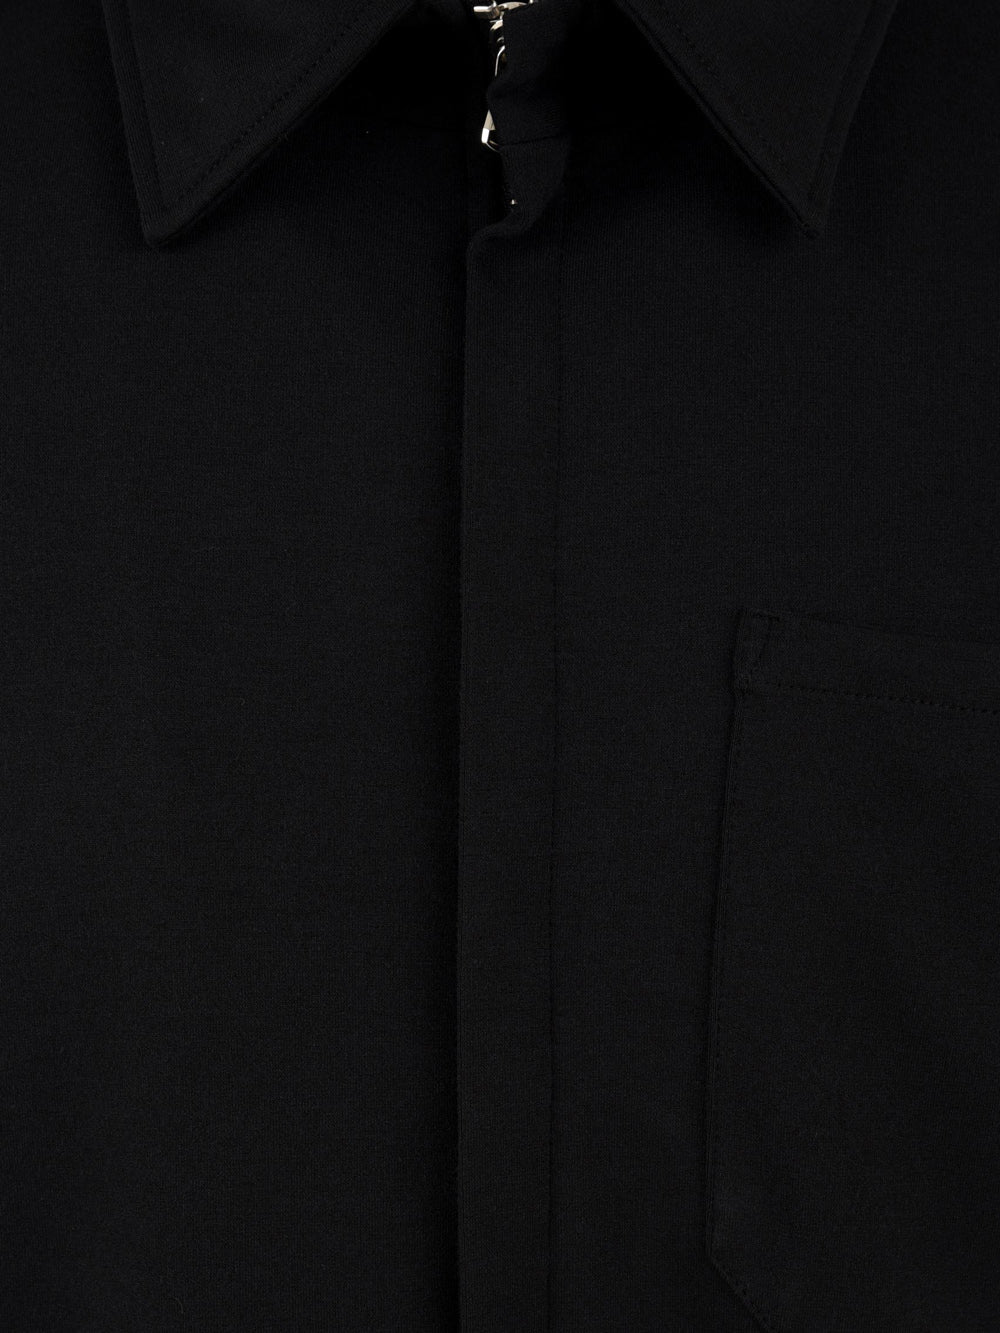 Camicia Uomo Nera con zip frontale e taschino sul petto